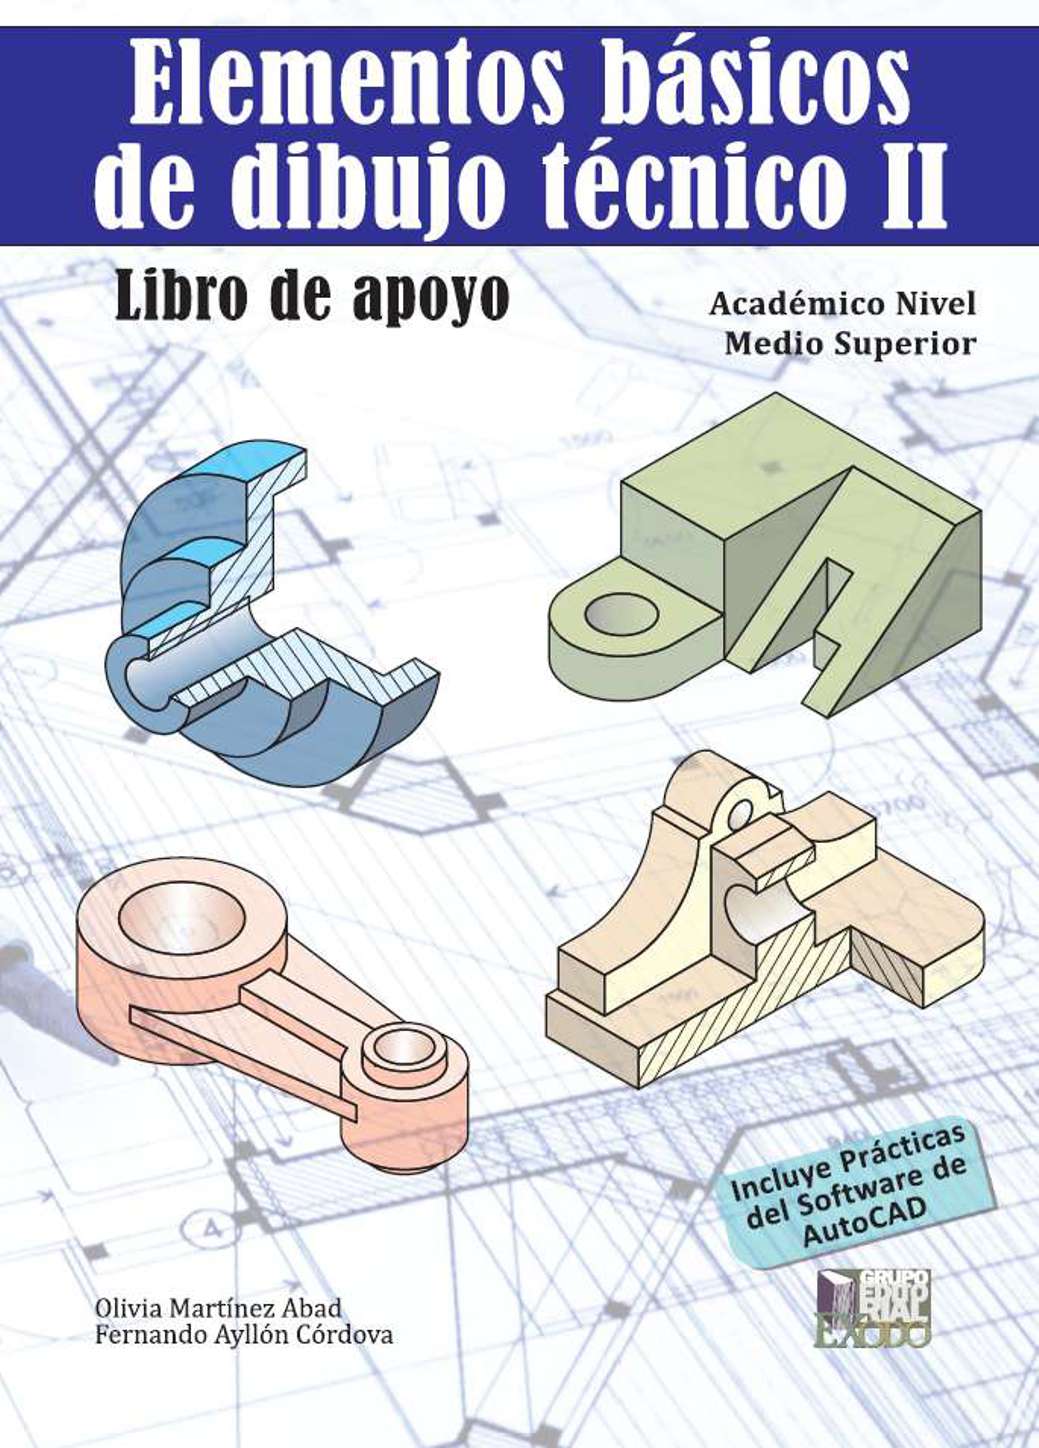 Elementos básicos de dibujo técnico II. Libro de apoyo. MARTINEZ ABAD  OLIVIA. Libro en papel. 9786078742806 Librería El Sótano